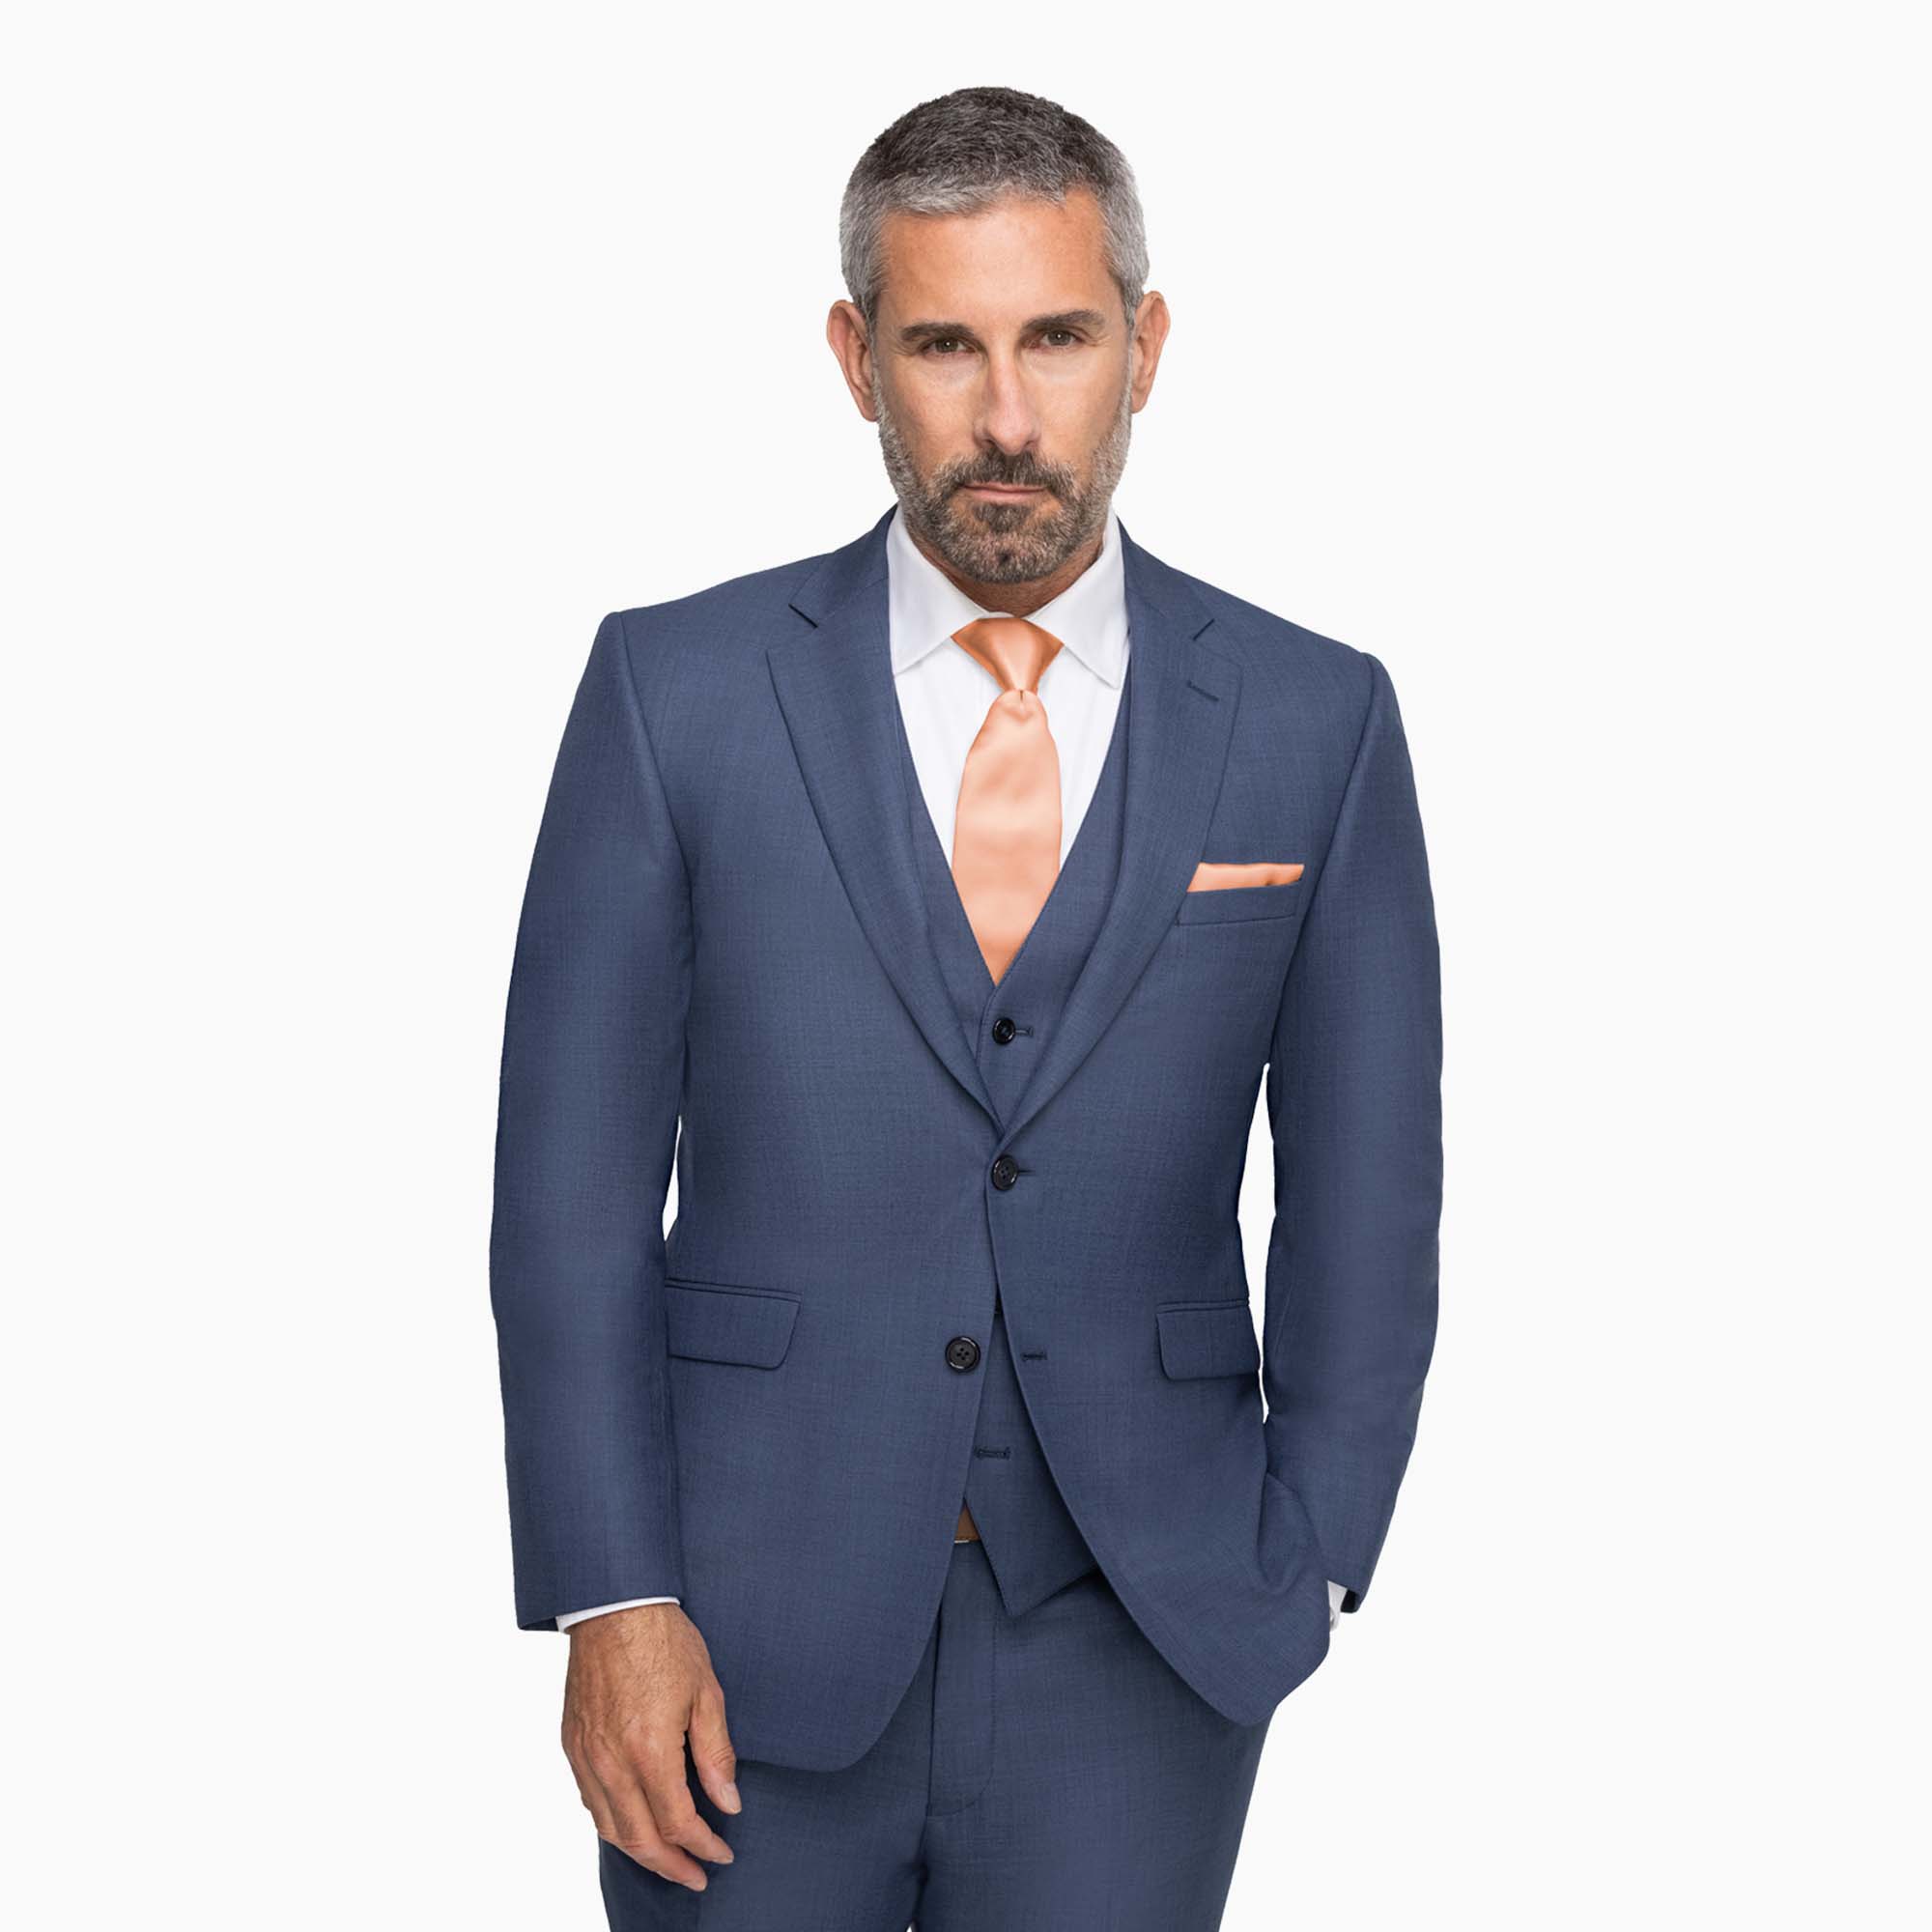 Allure Dark Blue notch lapel Suit on a male model